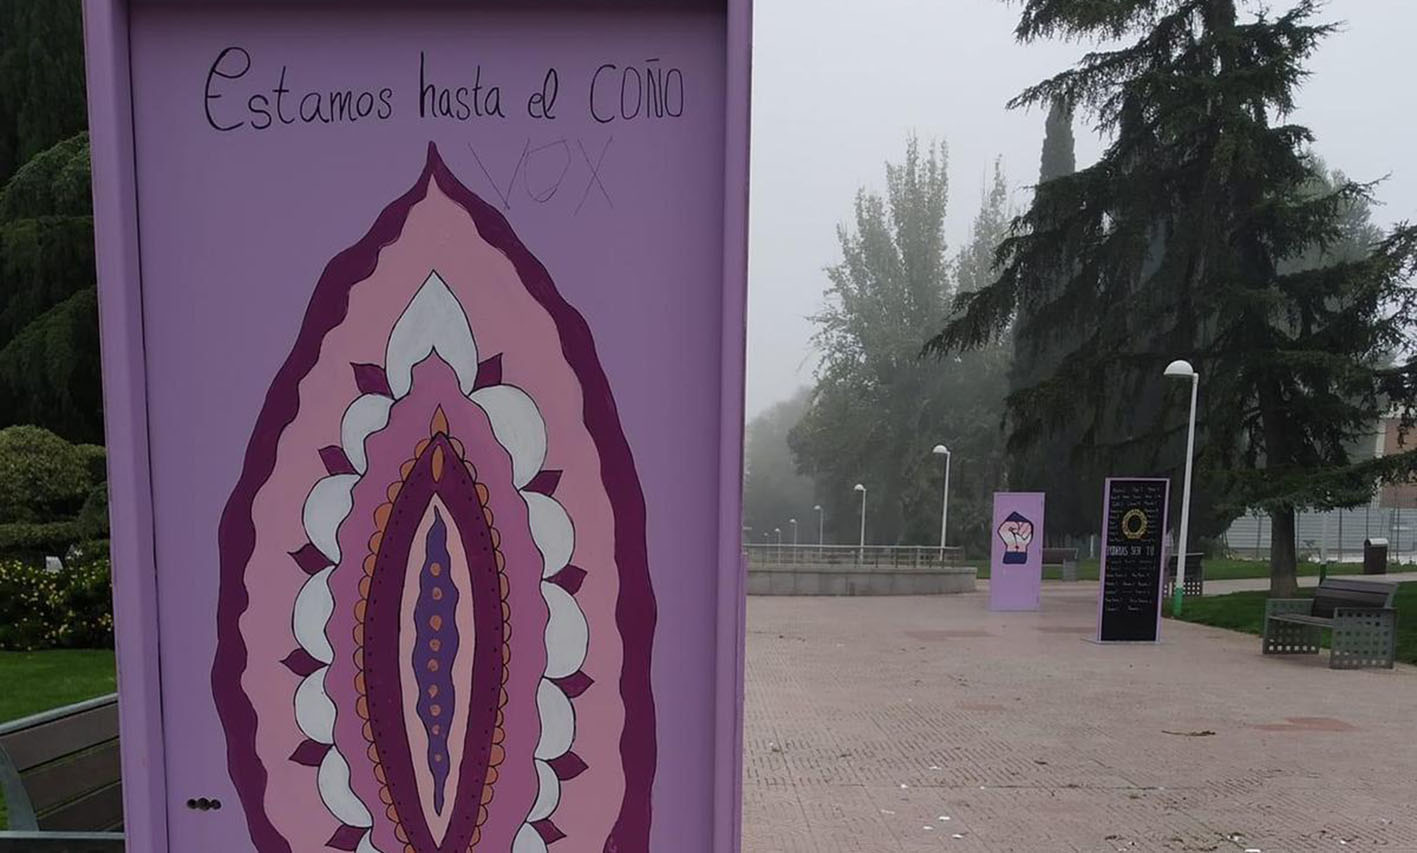 Imagen y frase de la campaña contra la violencia sexual colocada en un parque de Ciudad Real y que el PP ha pedido retirar.